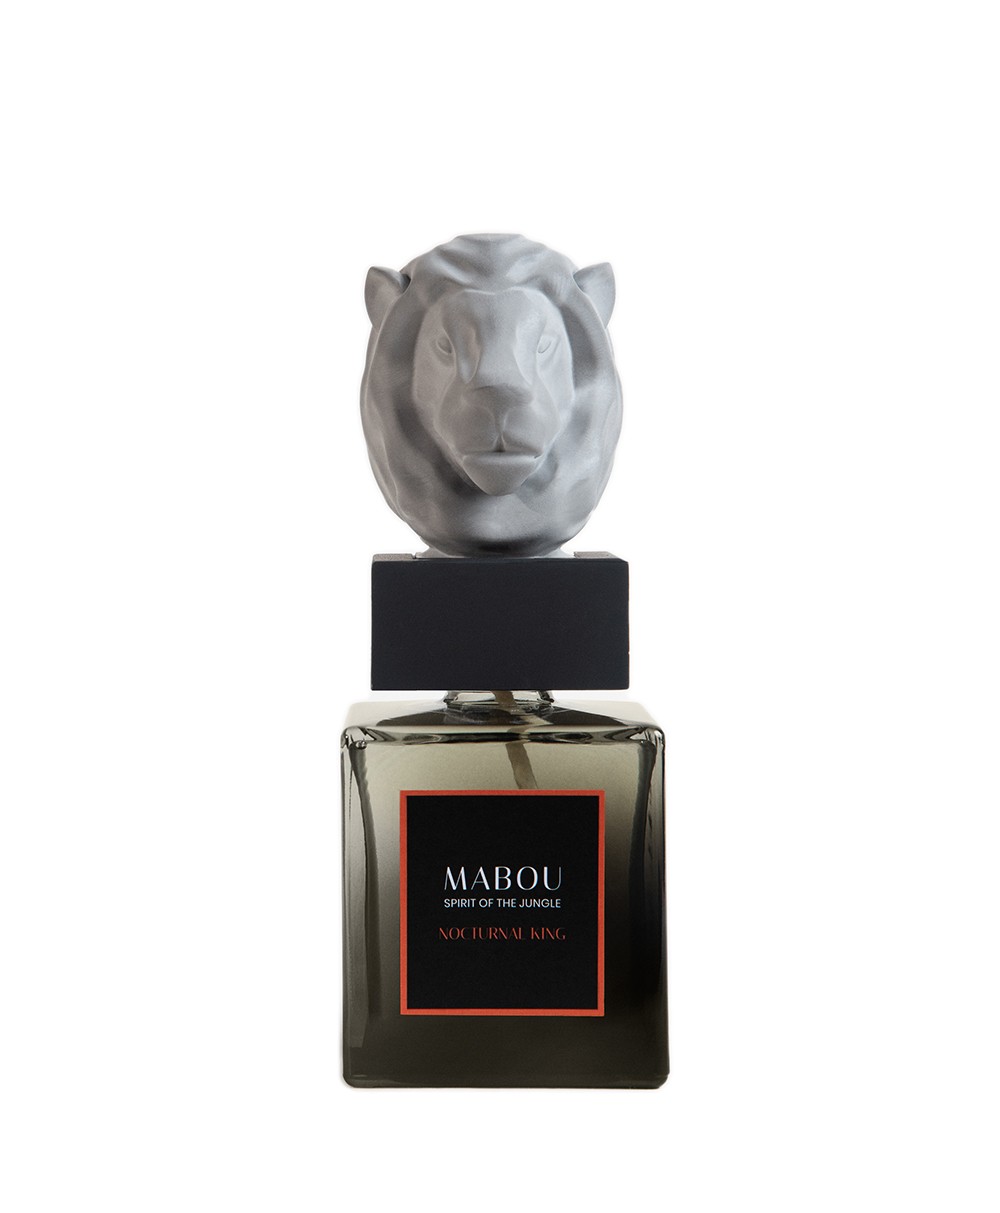 Produktbild der Duftskulptur Lion Nocturnal King von Mabou – im RAUM concept store